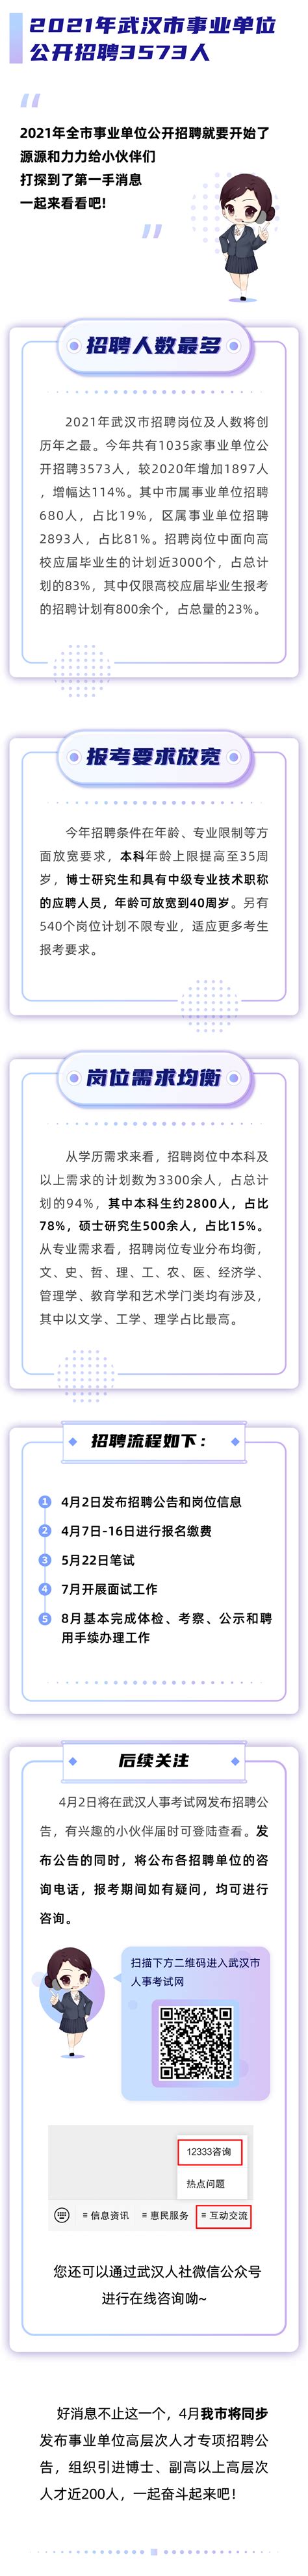 武汉市2022年度事业单位公开招聘公告 - 武汉市人力资源和社会保障局